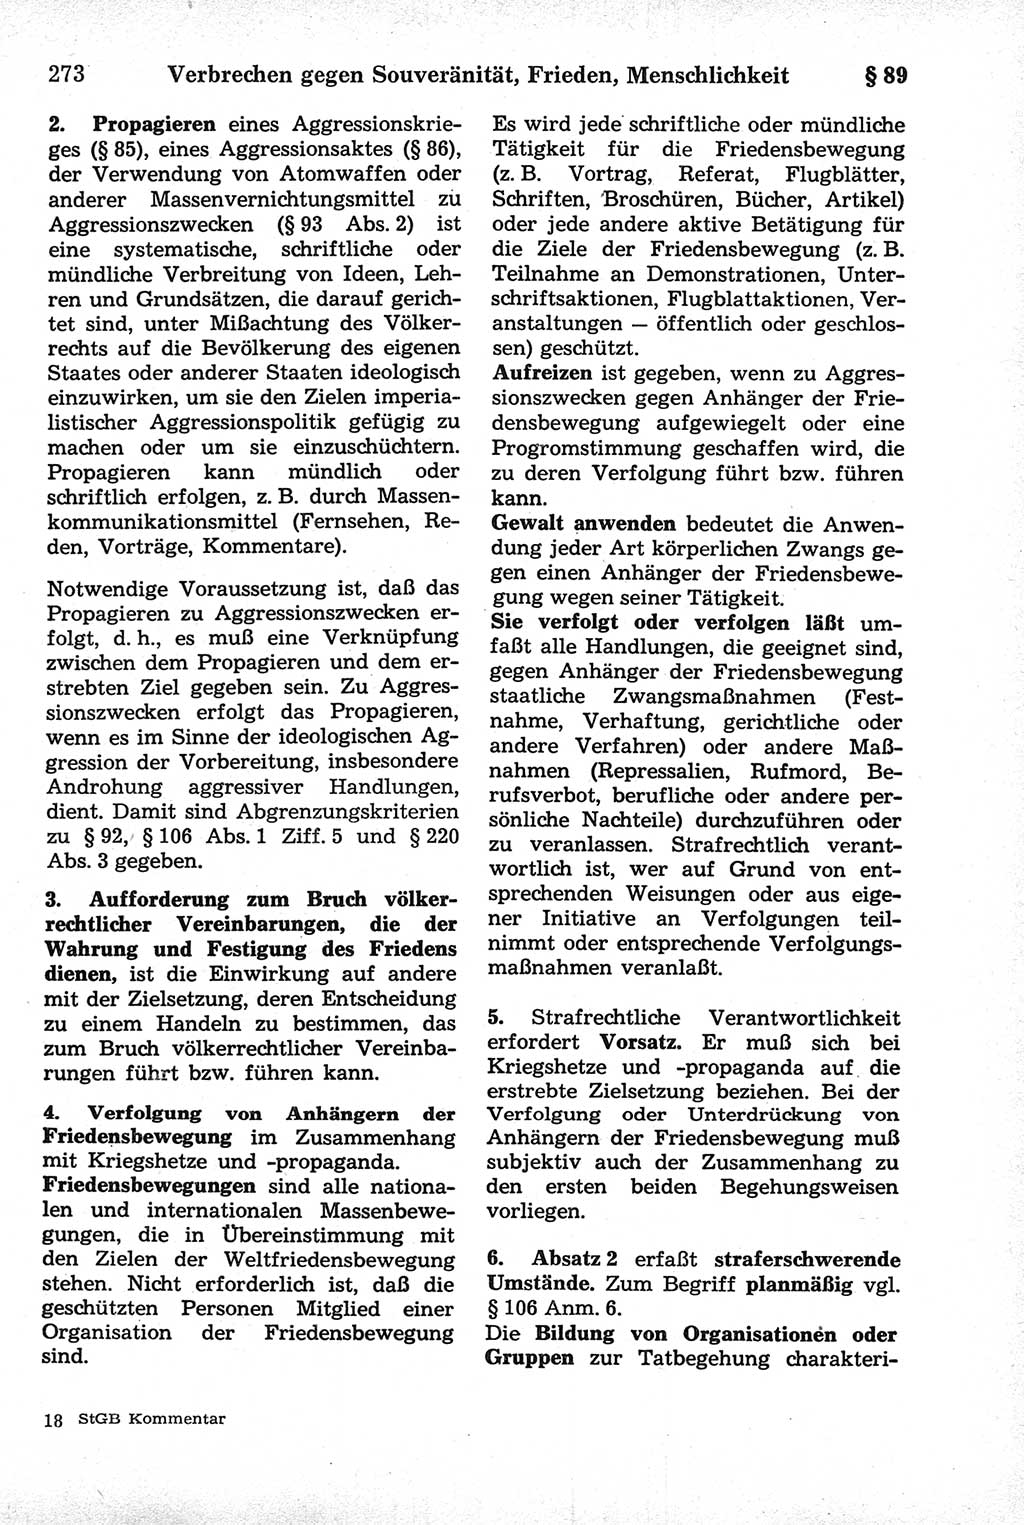 Strafrecht der Deutschen Demokratischen Republik (DDR), Kommentar zum Strafgesetzbuch (StGB) 1981, Seite 273 (Strafr. DDR Komm. StGB 1981, S. 273)